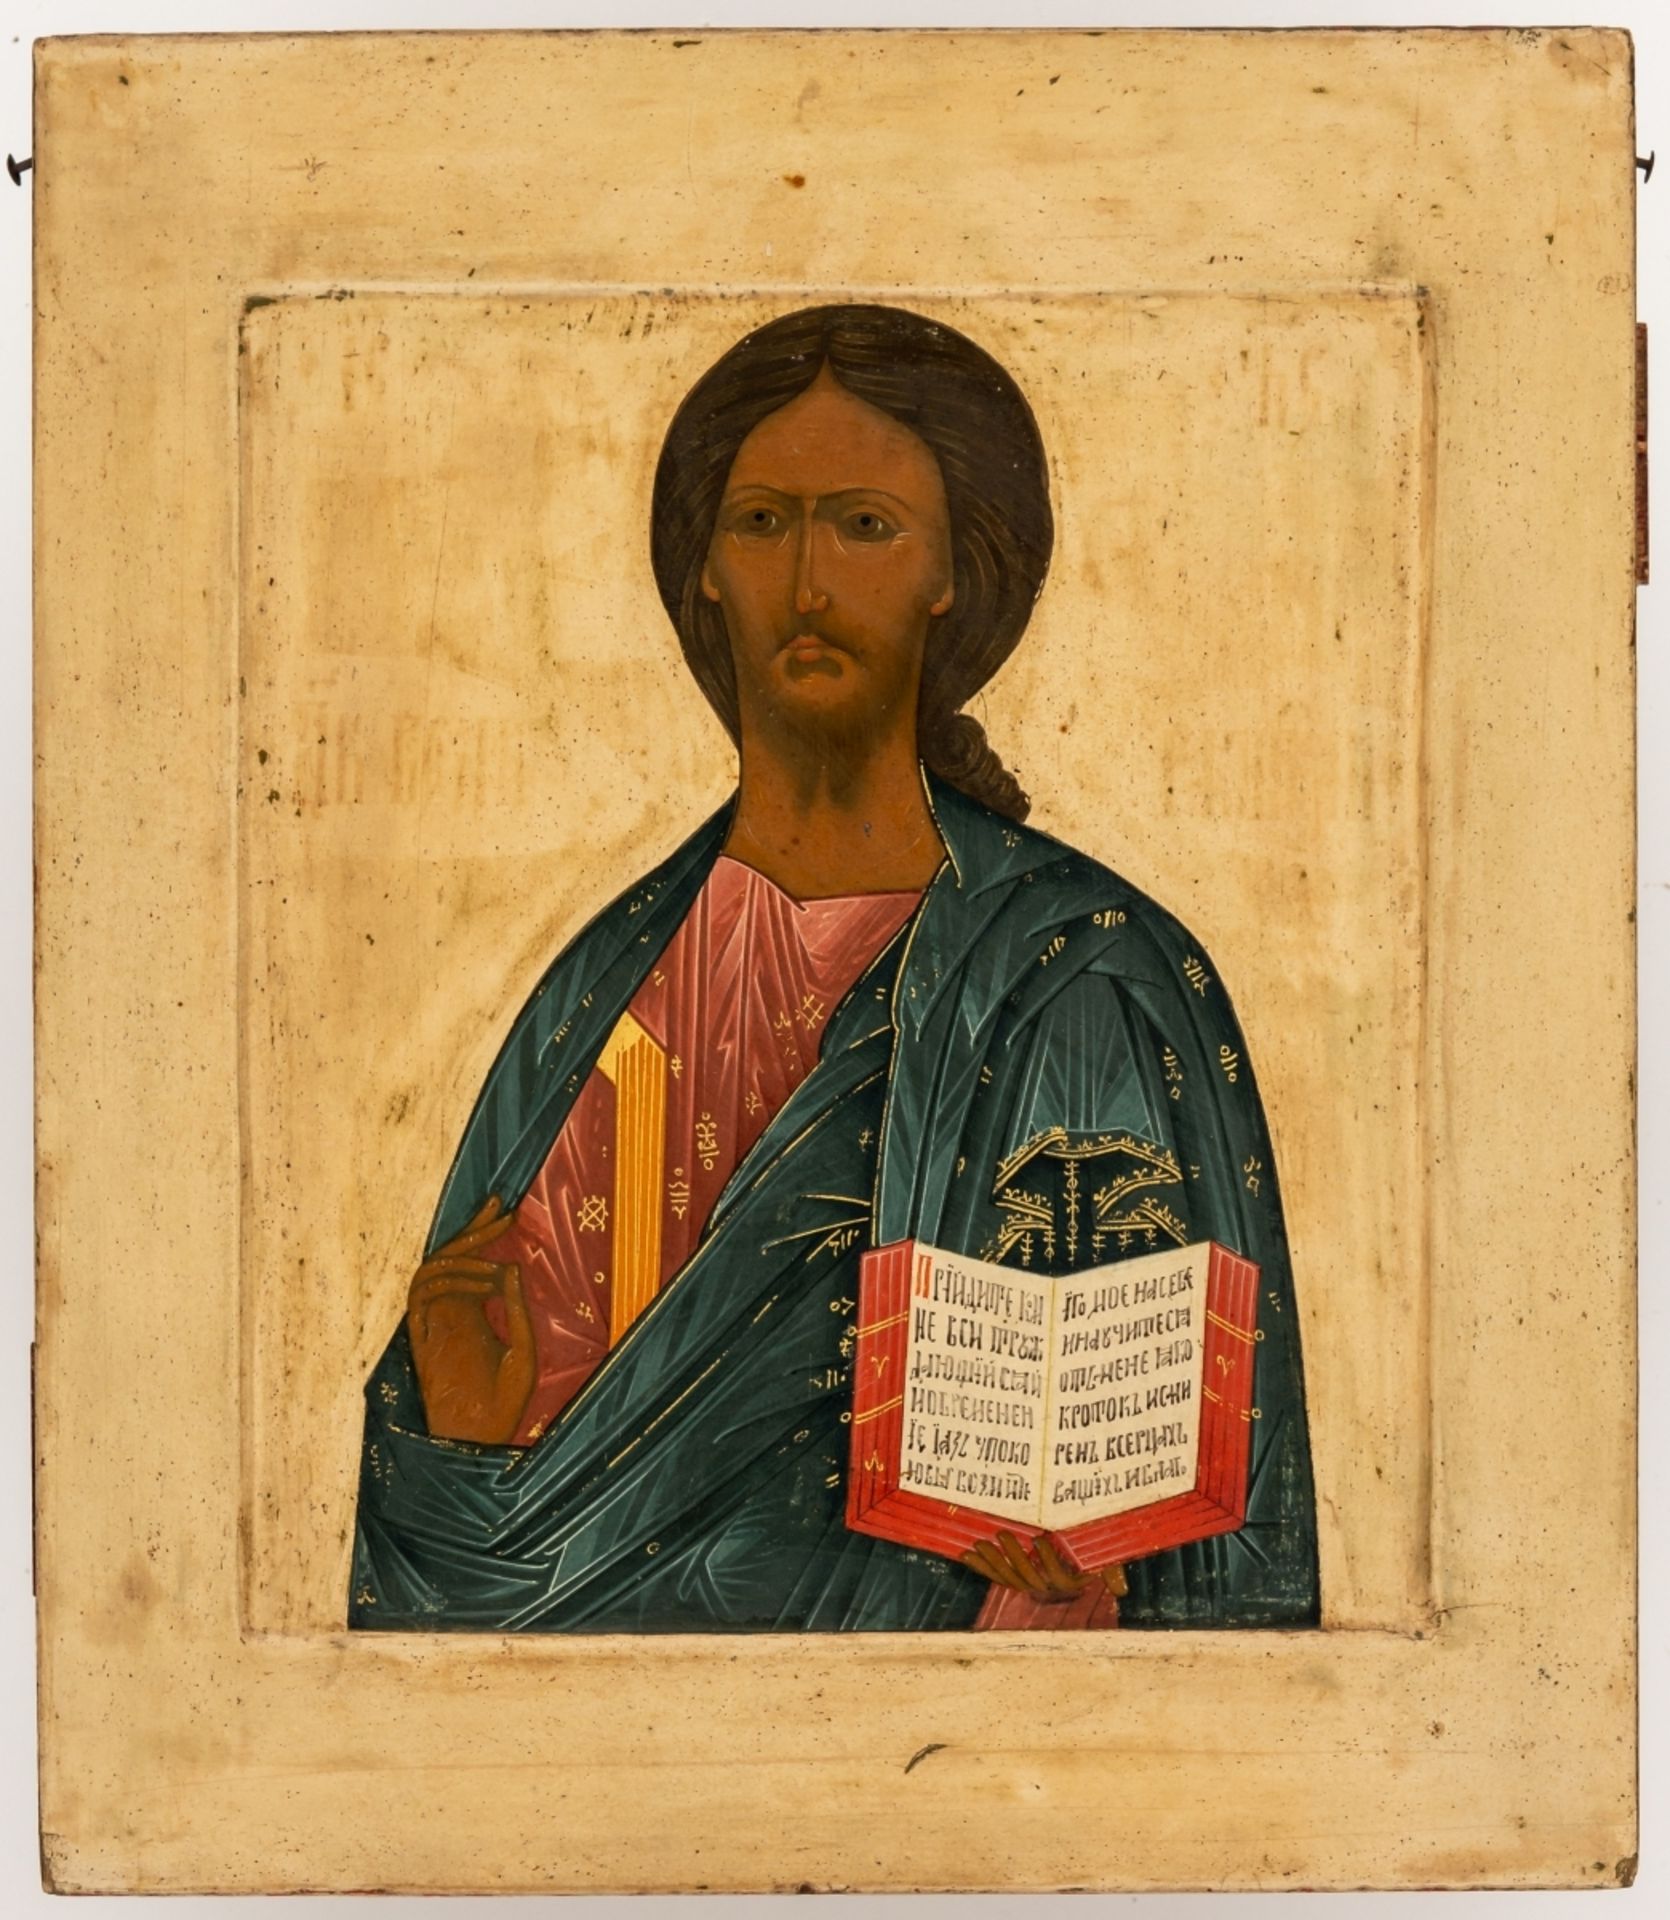 Christus PantokratorSehr fein gemalte russische Ikone, um 190031 x 26,5 cmProvenienz: Privatsammlung